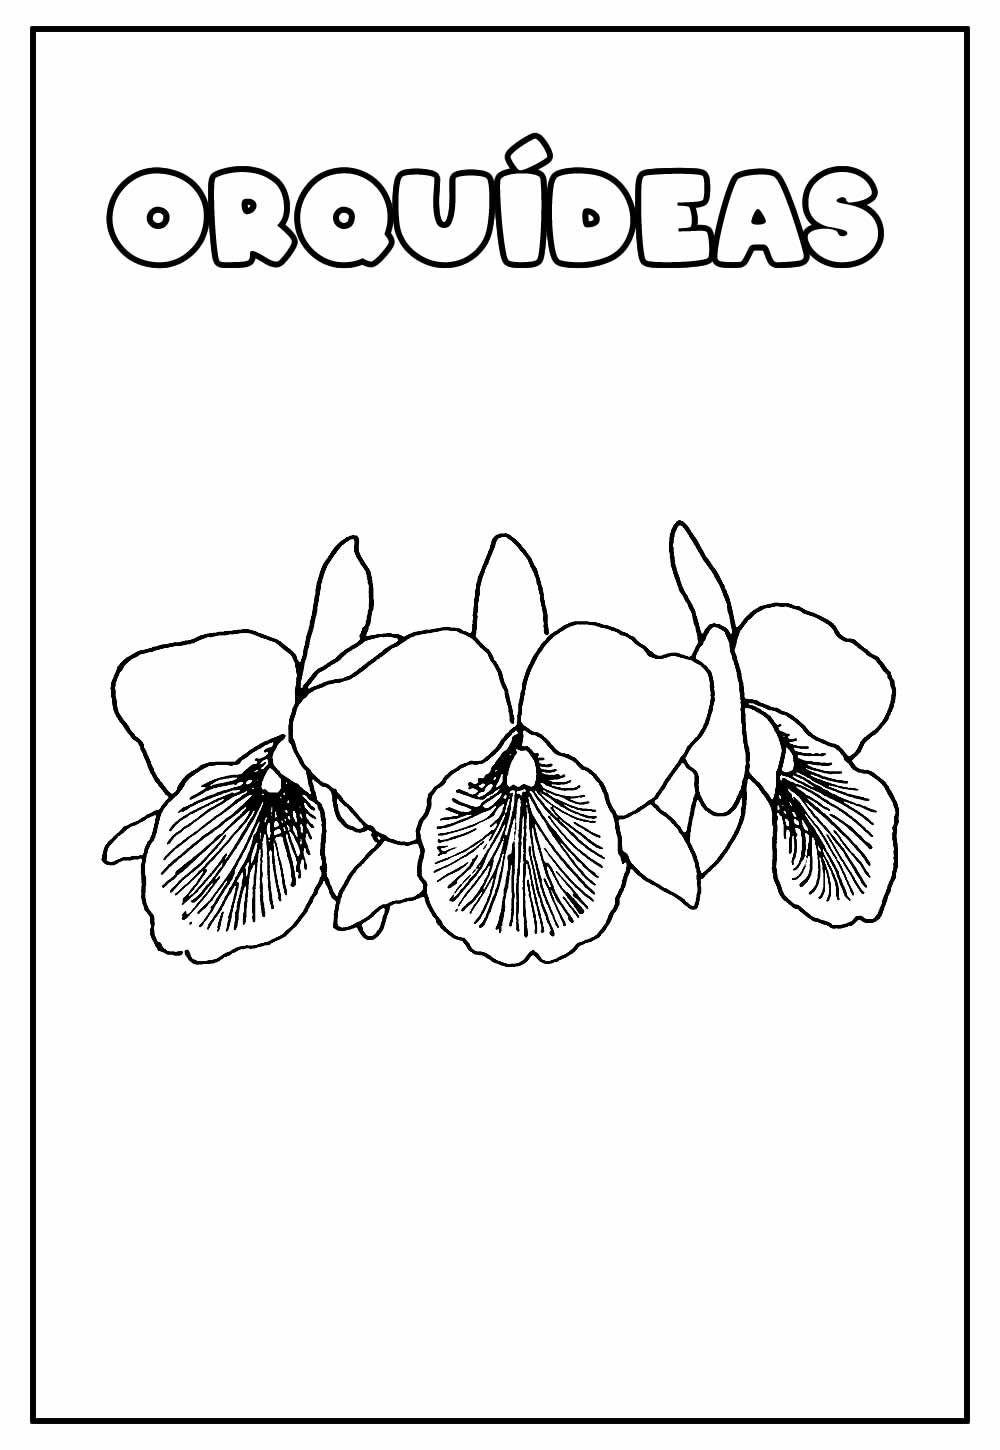 Desenho Educativo de Orquídeas para colorir